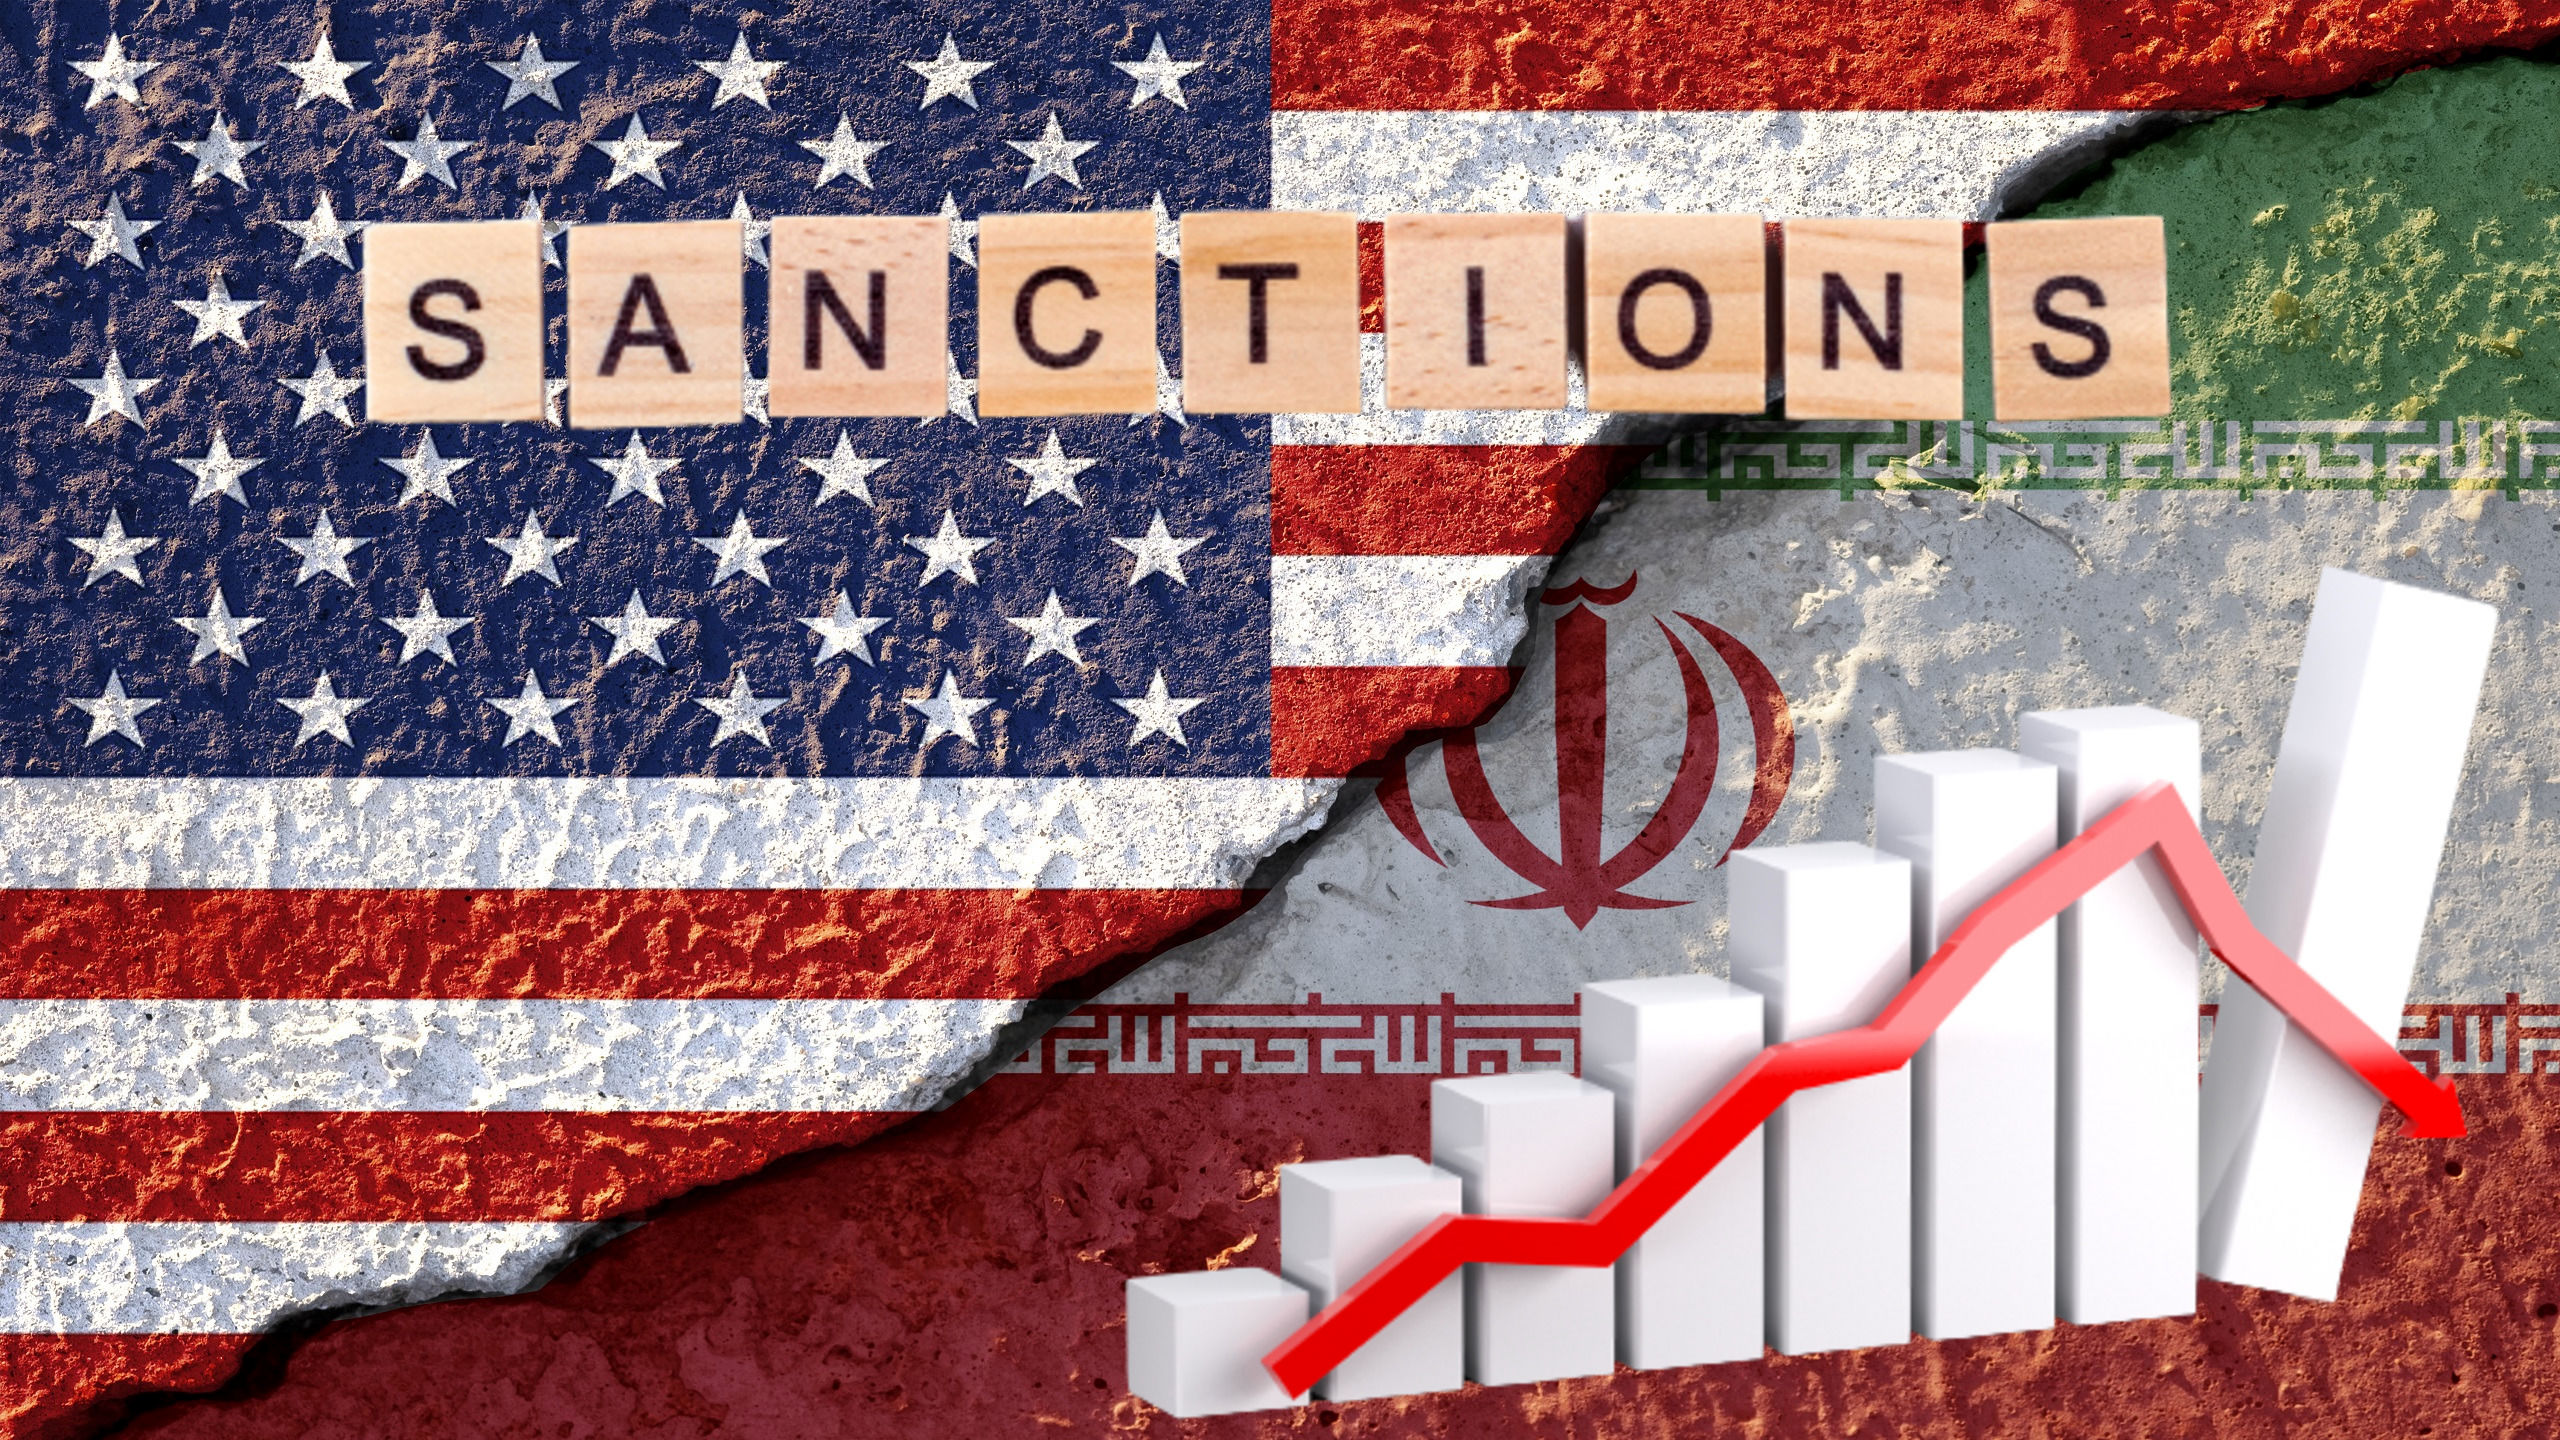 اقتصاد ایران؛ در حال فروپاشی یا خروج از رکود؟